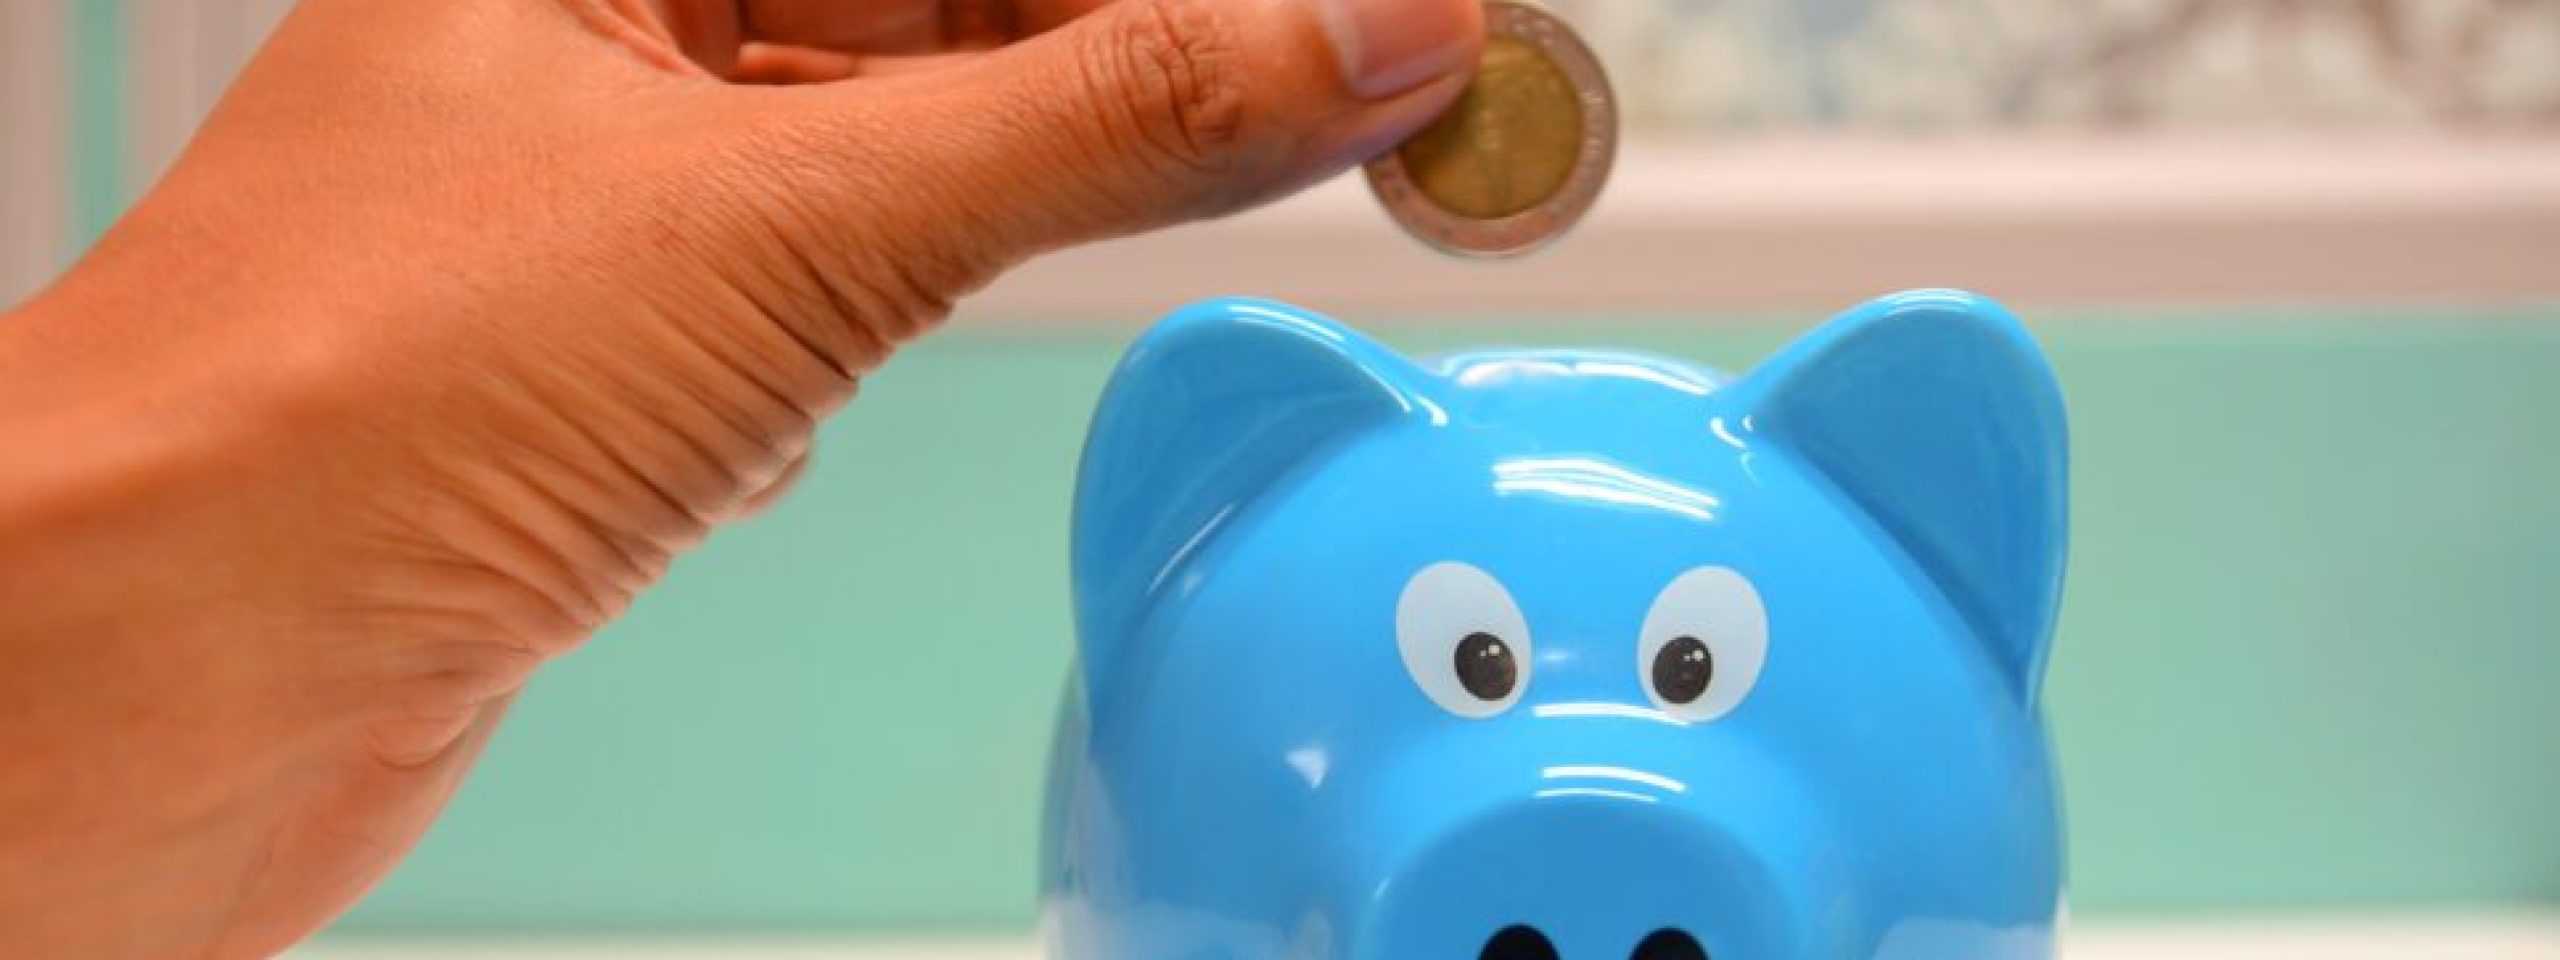 A hand holding a coin over a blue piggy bank.